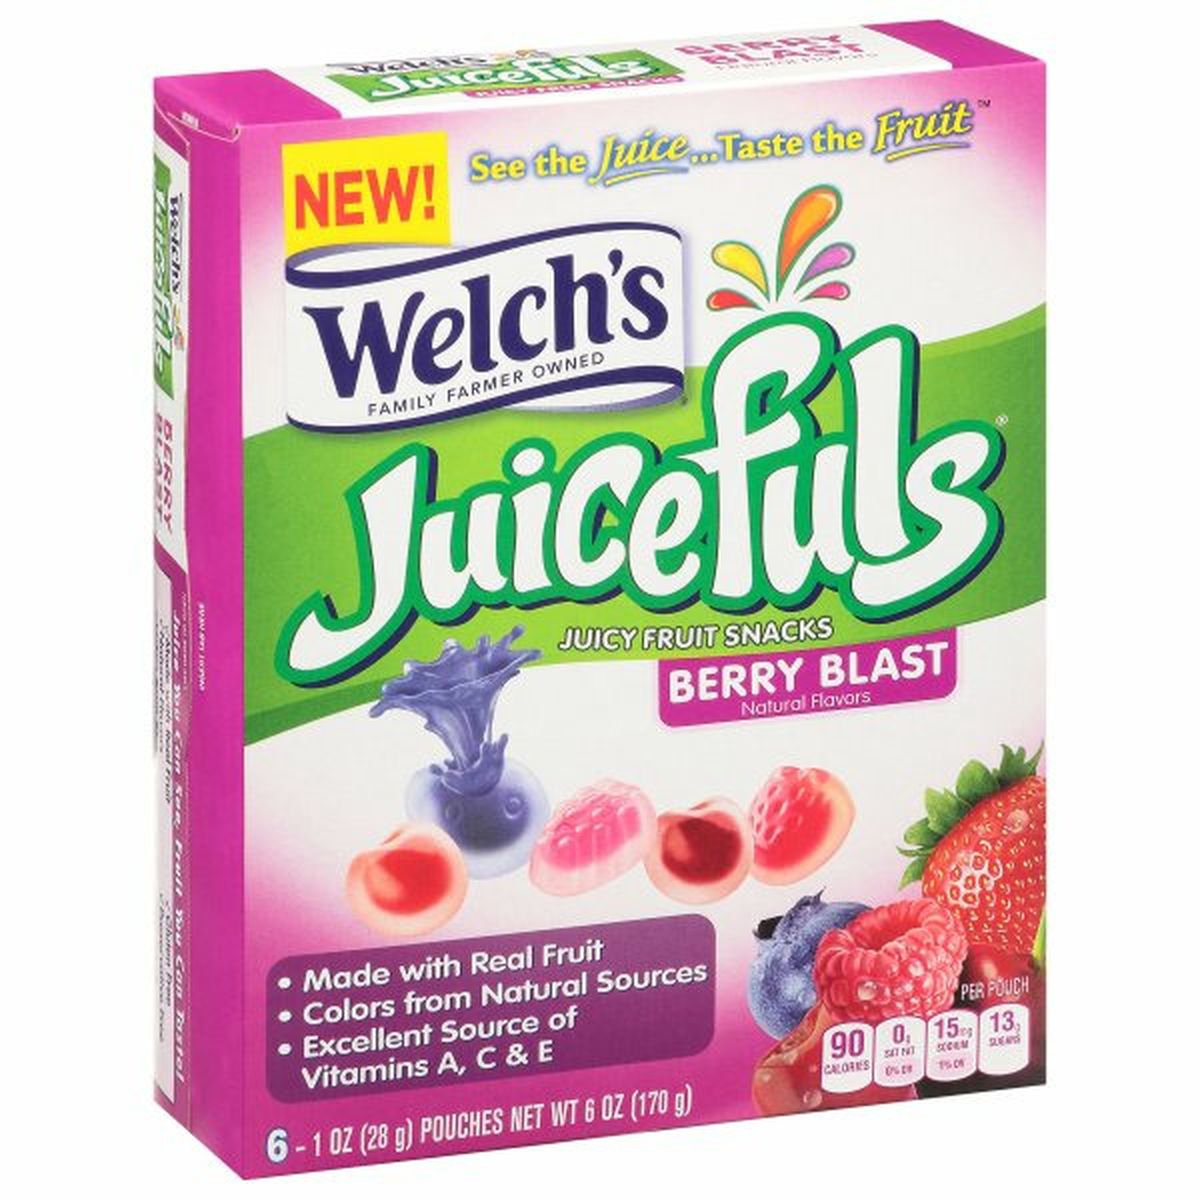 Calories in Welch's Juicefuls Juicy Fruit Snacks, Berry Blast, 6 Pack